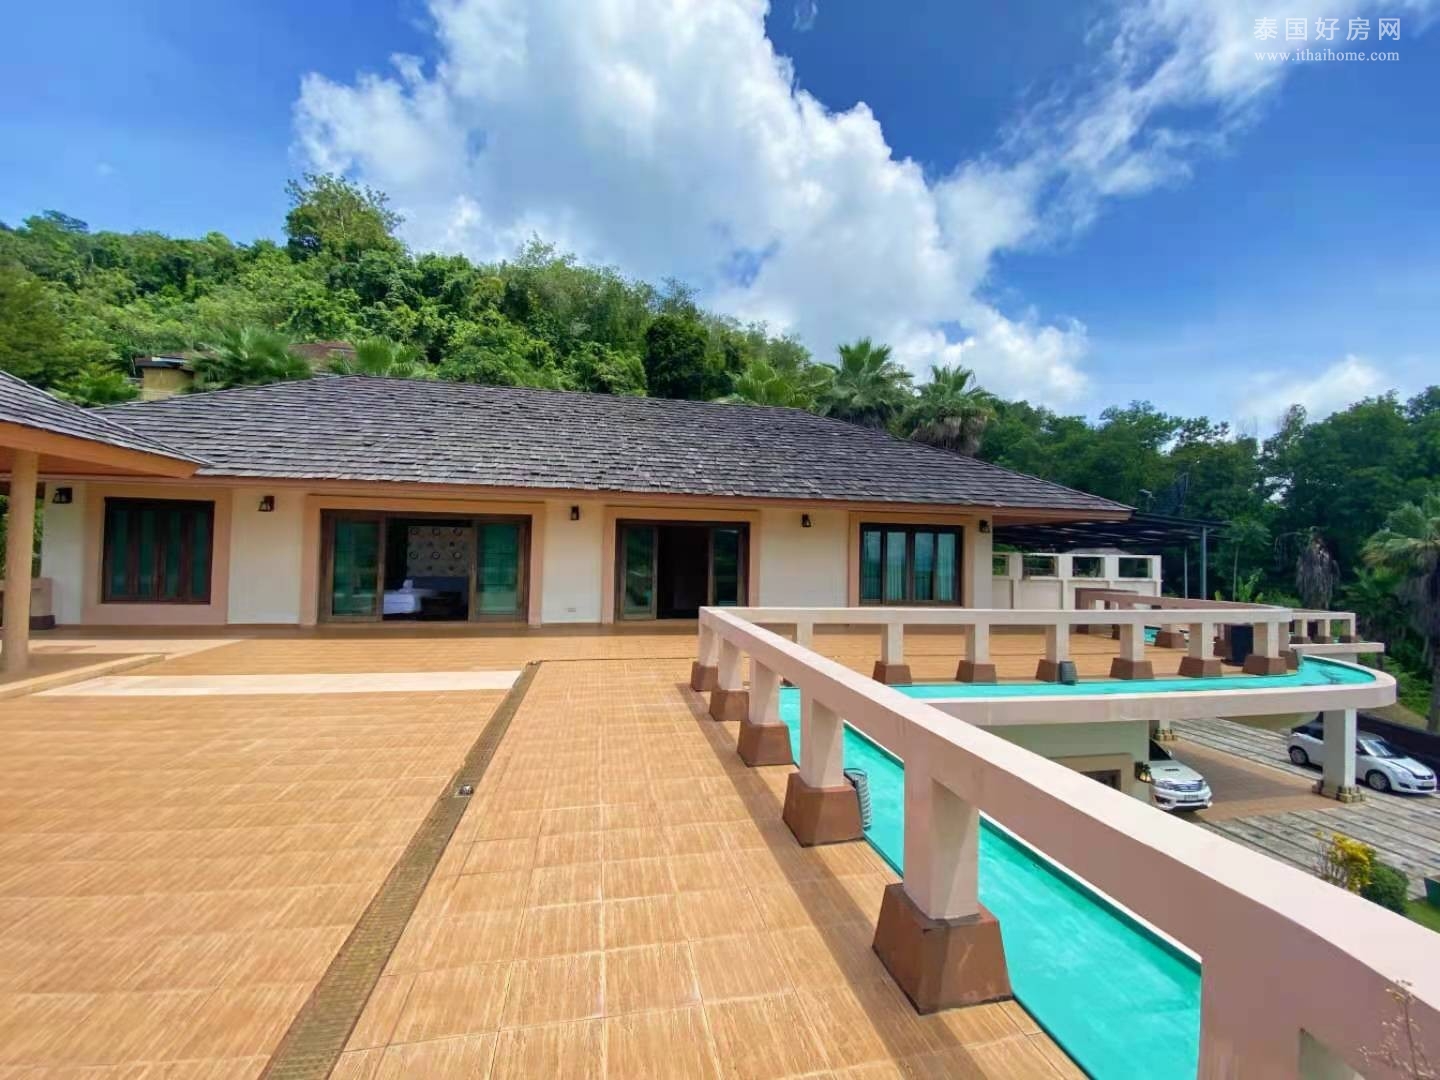 【推荐】普吉岛Kathu区国际学校旁的山景别墅出售 4卧1,800平米 售4,500万泰铢